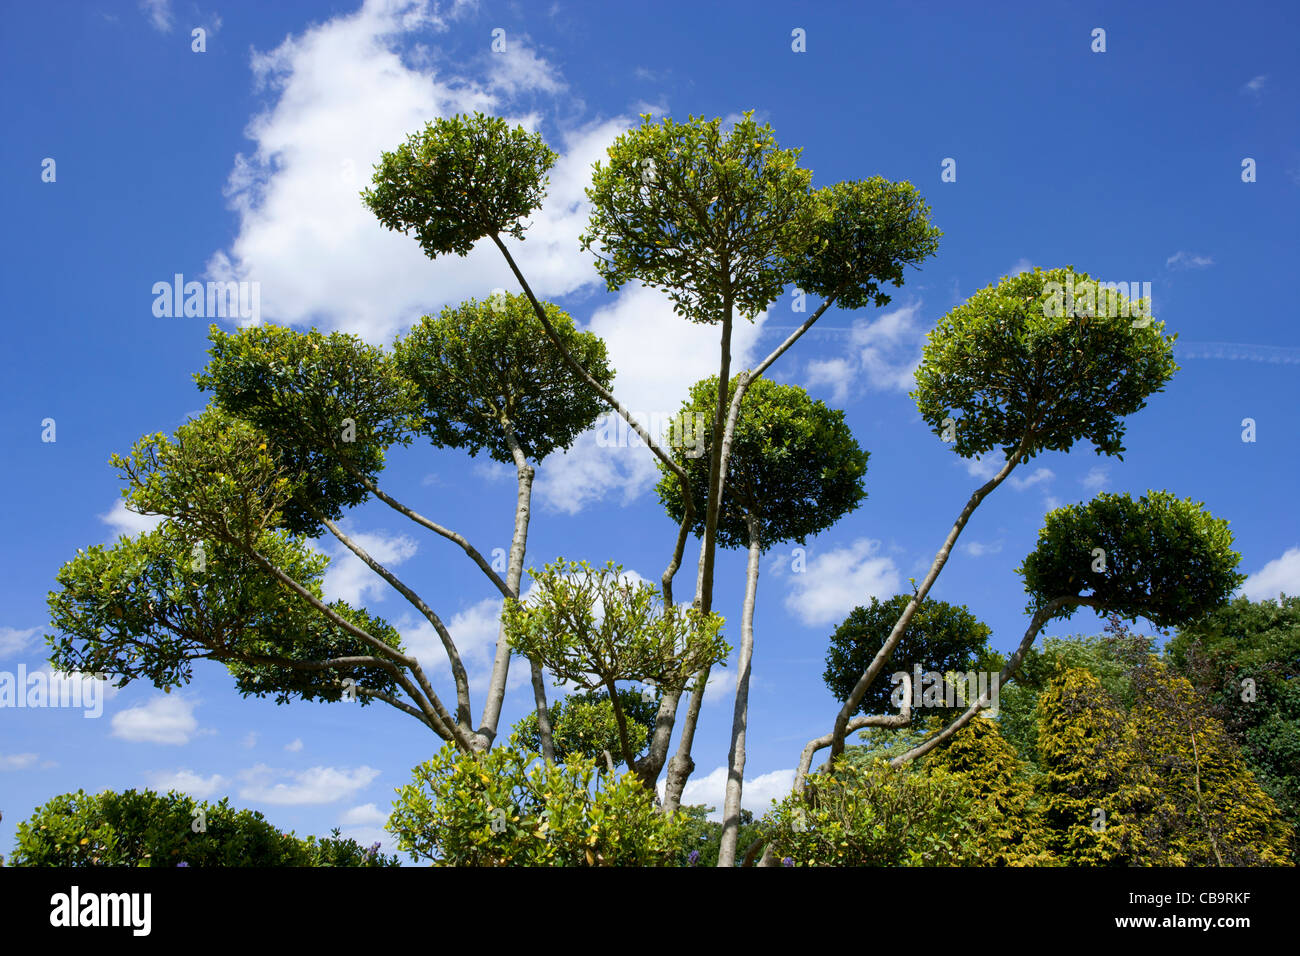 Wolke Baum mit Himmel, Ilex Crenata, japanische Stechpalme Formschnitt. Das ist japanische Stechpalme, die in Formschnitt Cloud Bäume geprägt ist. Stockfoto